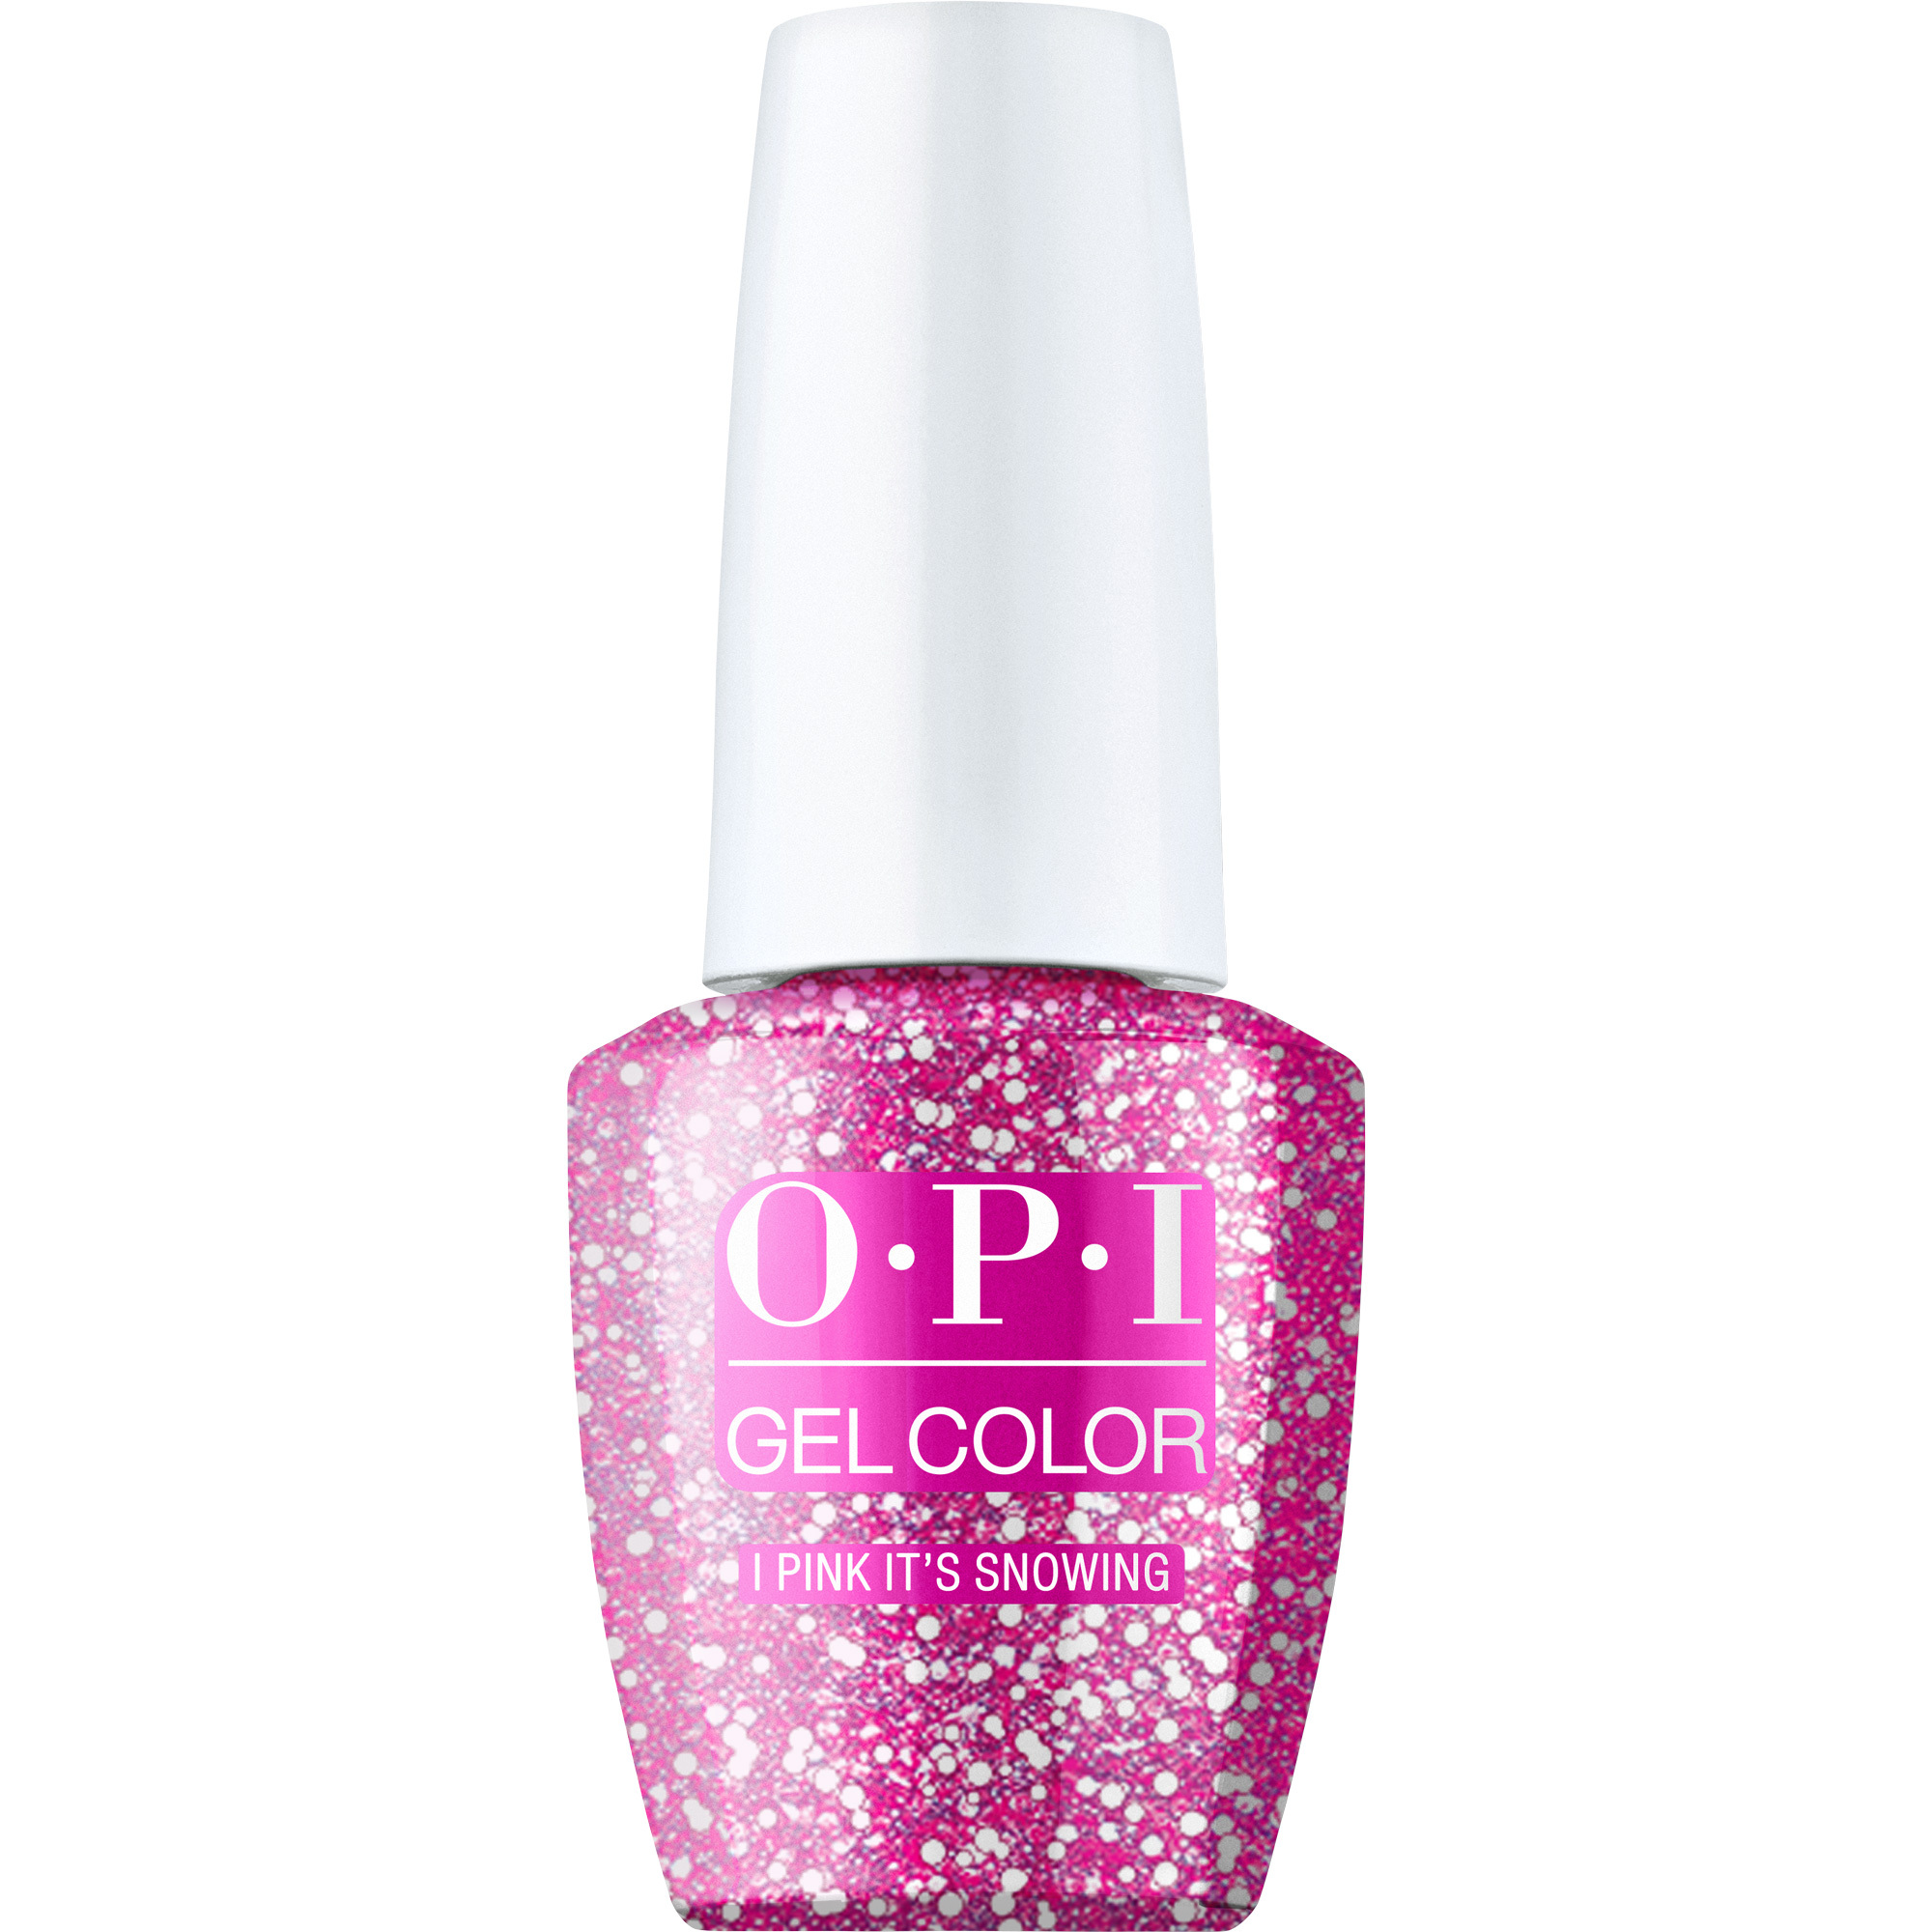 OPI Gel Color 360 - I Pink It’s Snowing